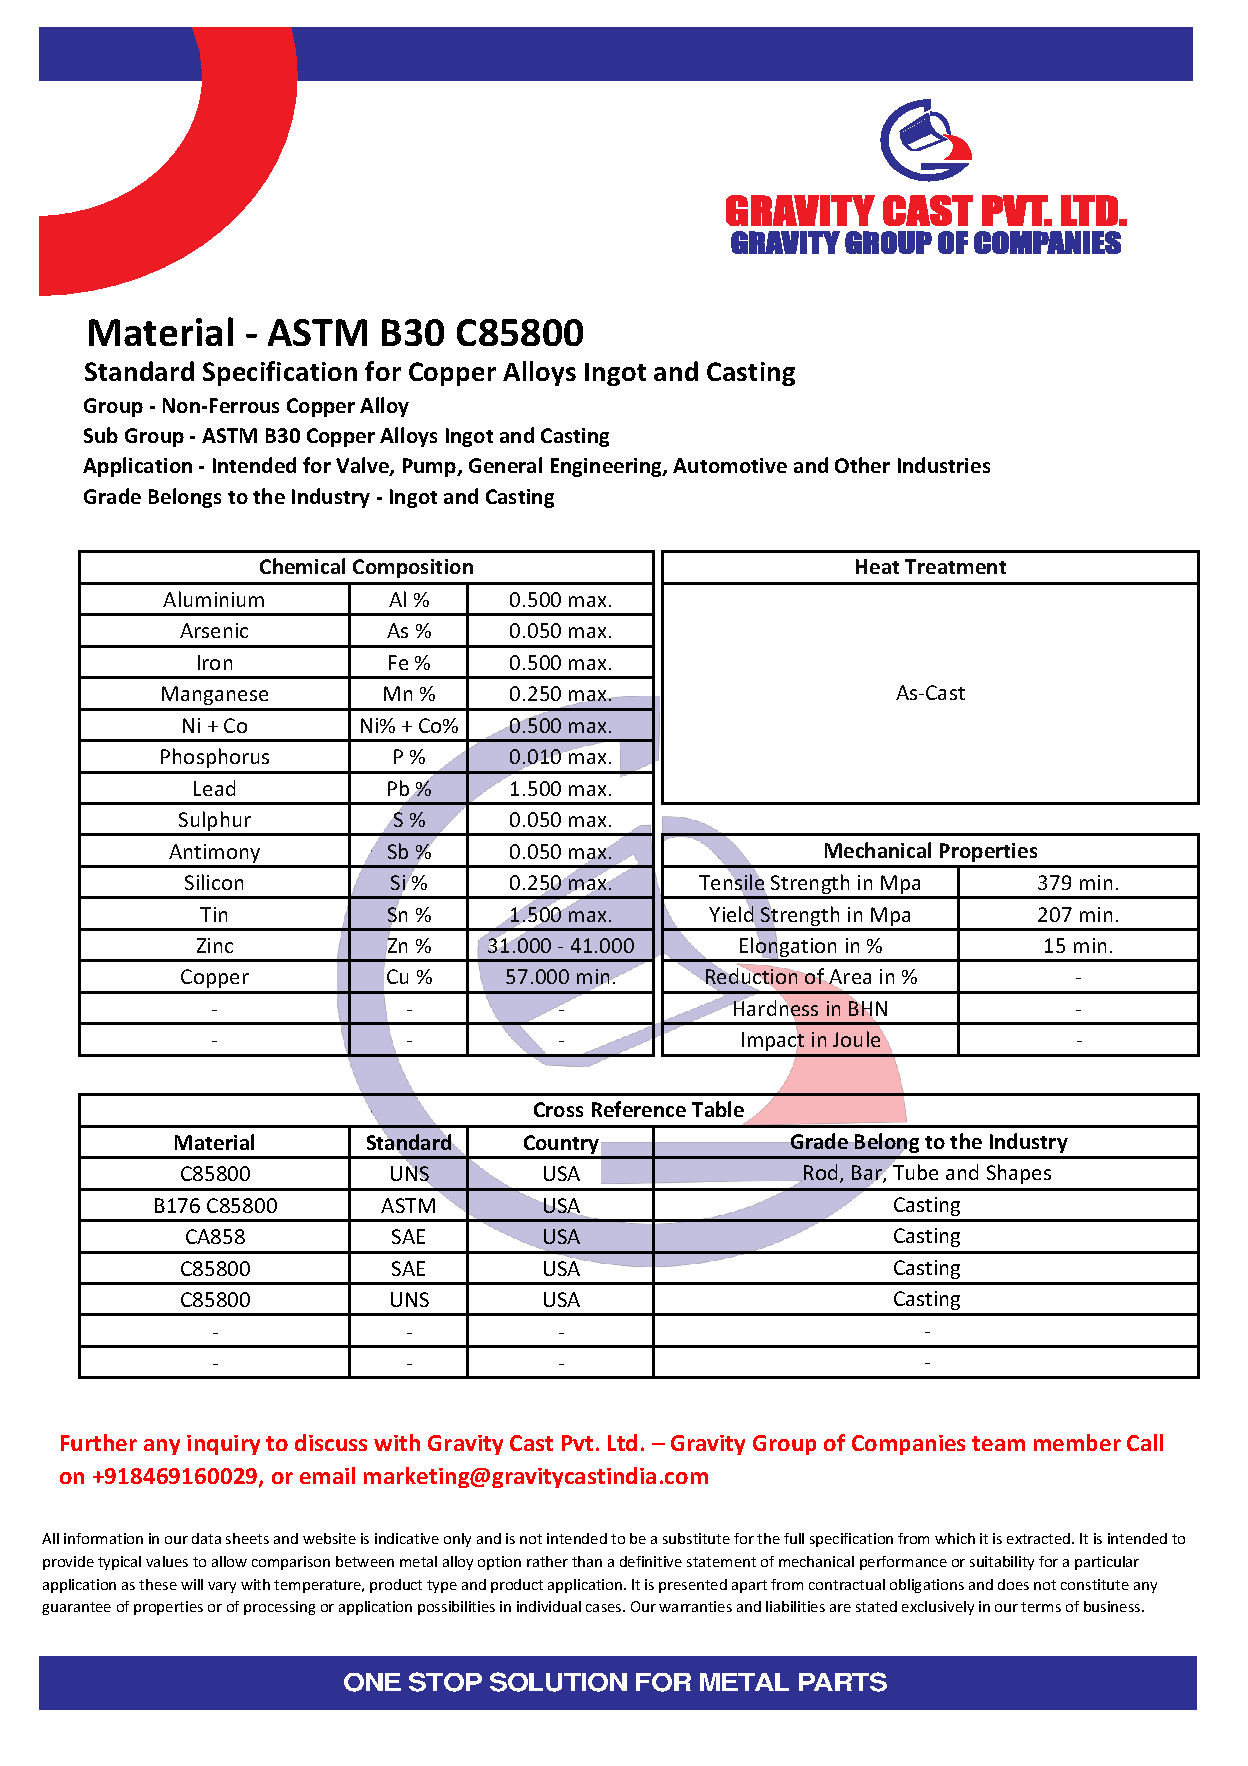 ASTM B30 C85800.pdf